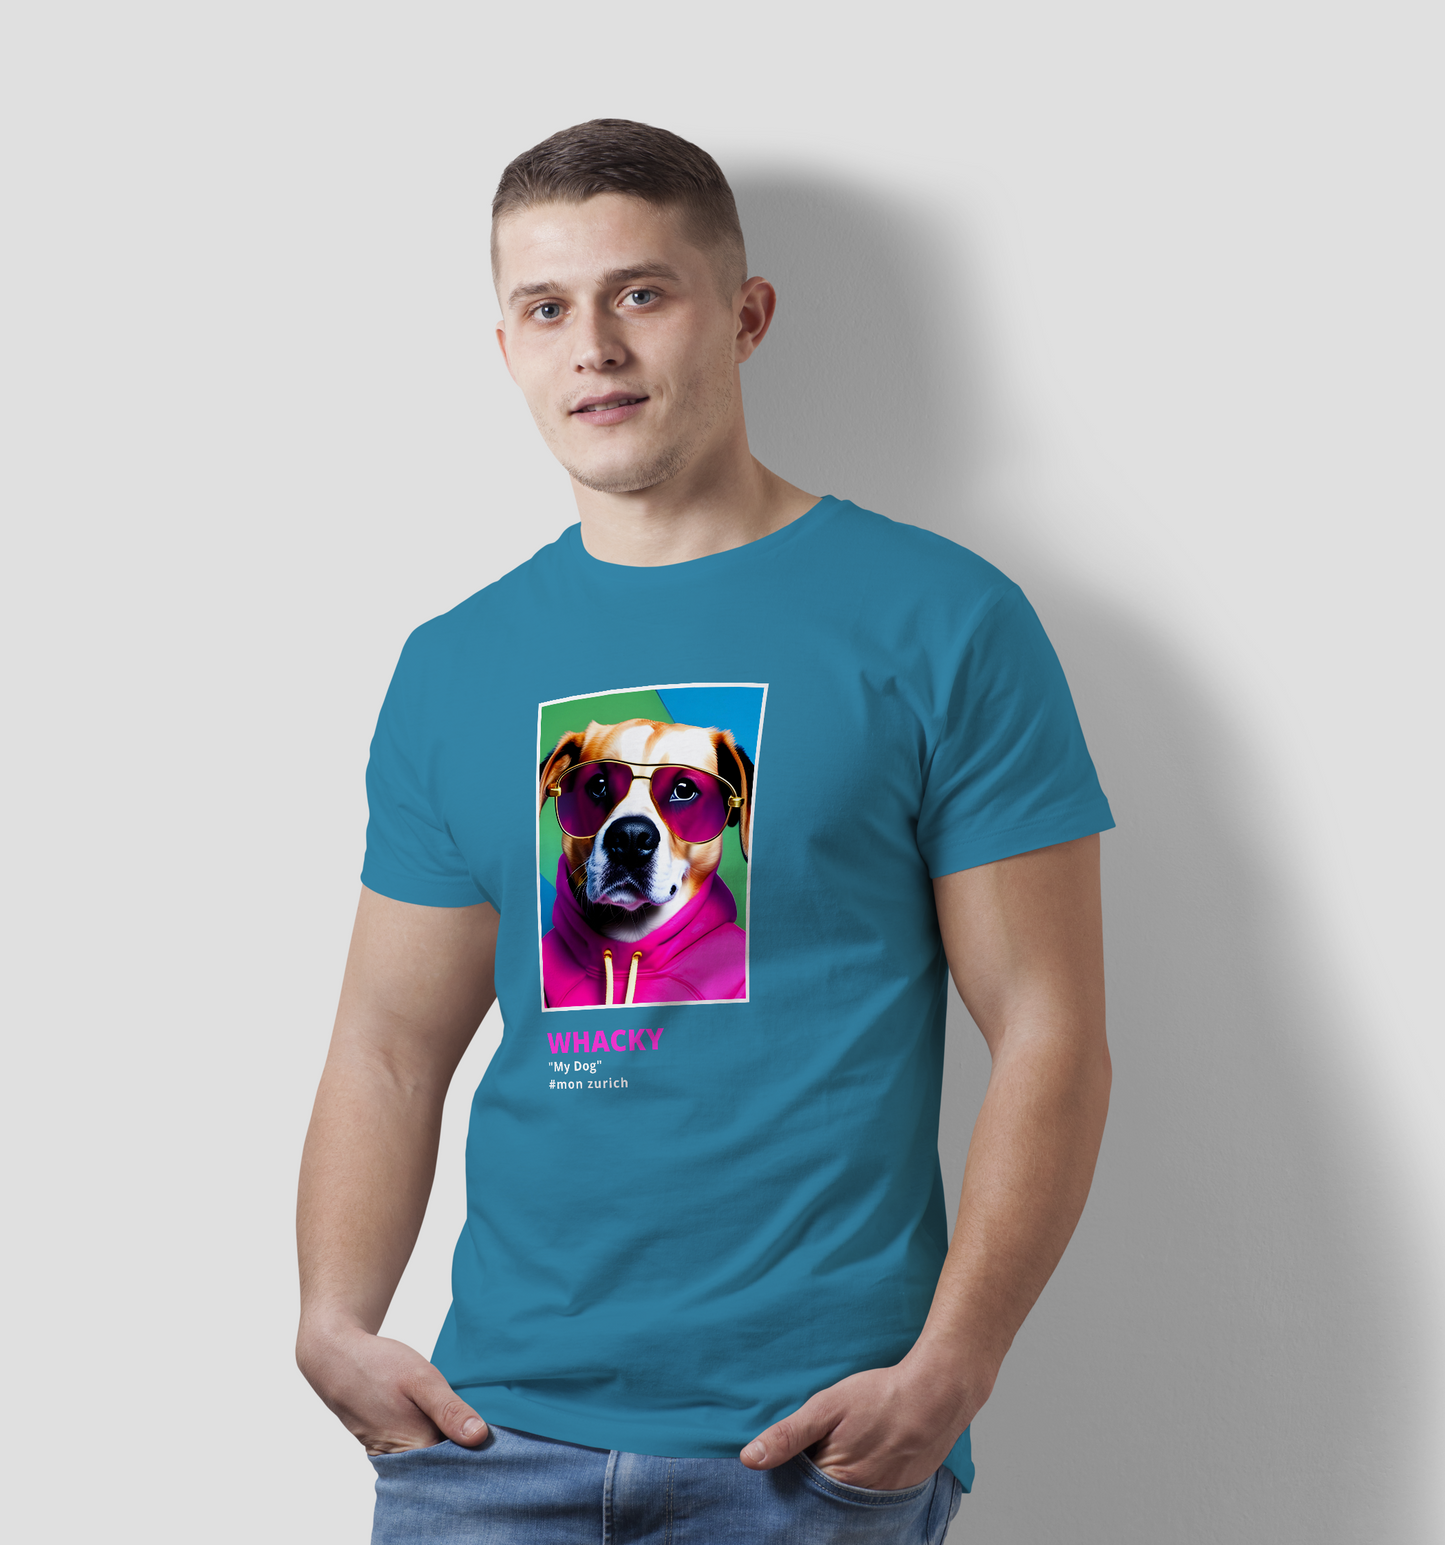 Whacky, My Dog T-Shirt In Dark - Mon Zurich Originals